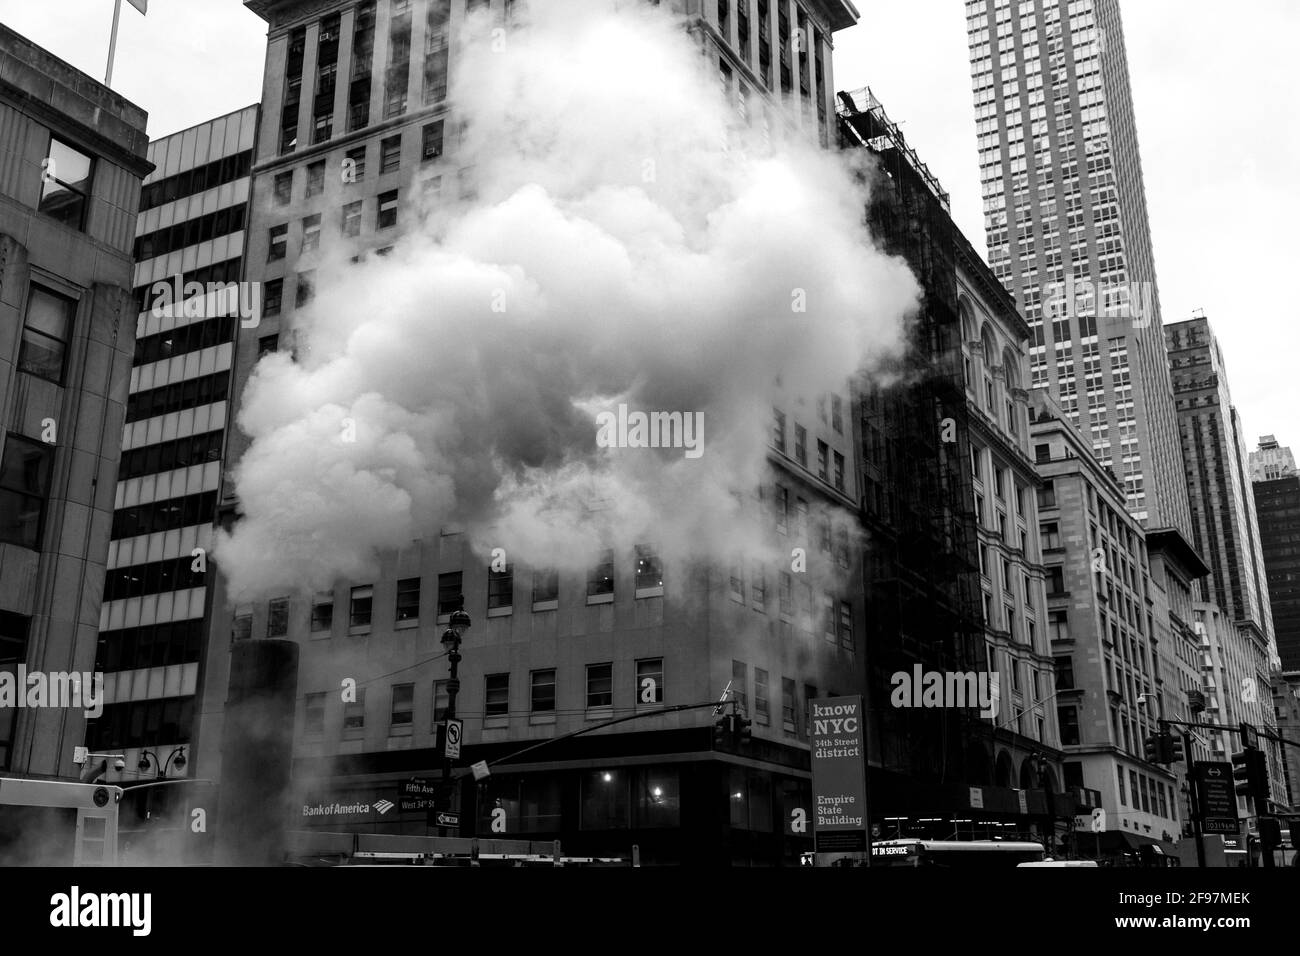 Ein Schlot, der in Midtown New York Dampf auslässt. Das Dampfsystem versorgt Tausende von Unternehmen und Häusern in Manhattan mit Heizung und Warmwasser. Straßenfotografie in Manhattan, New York City, USA Stockfoto